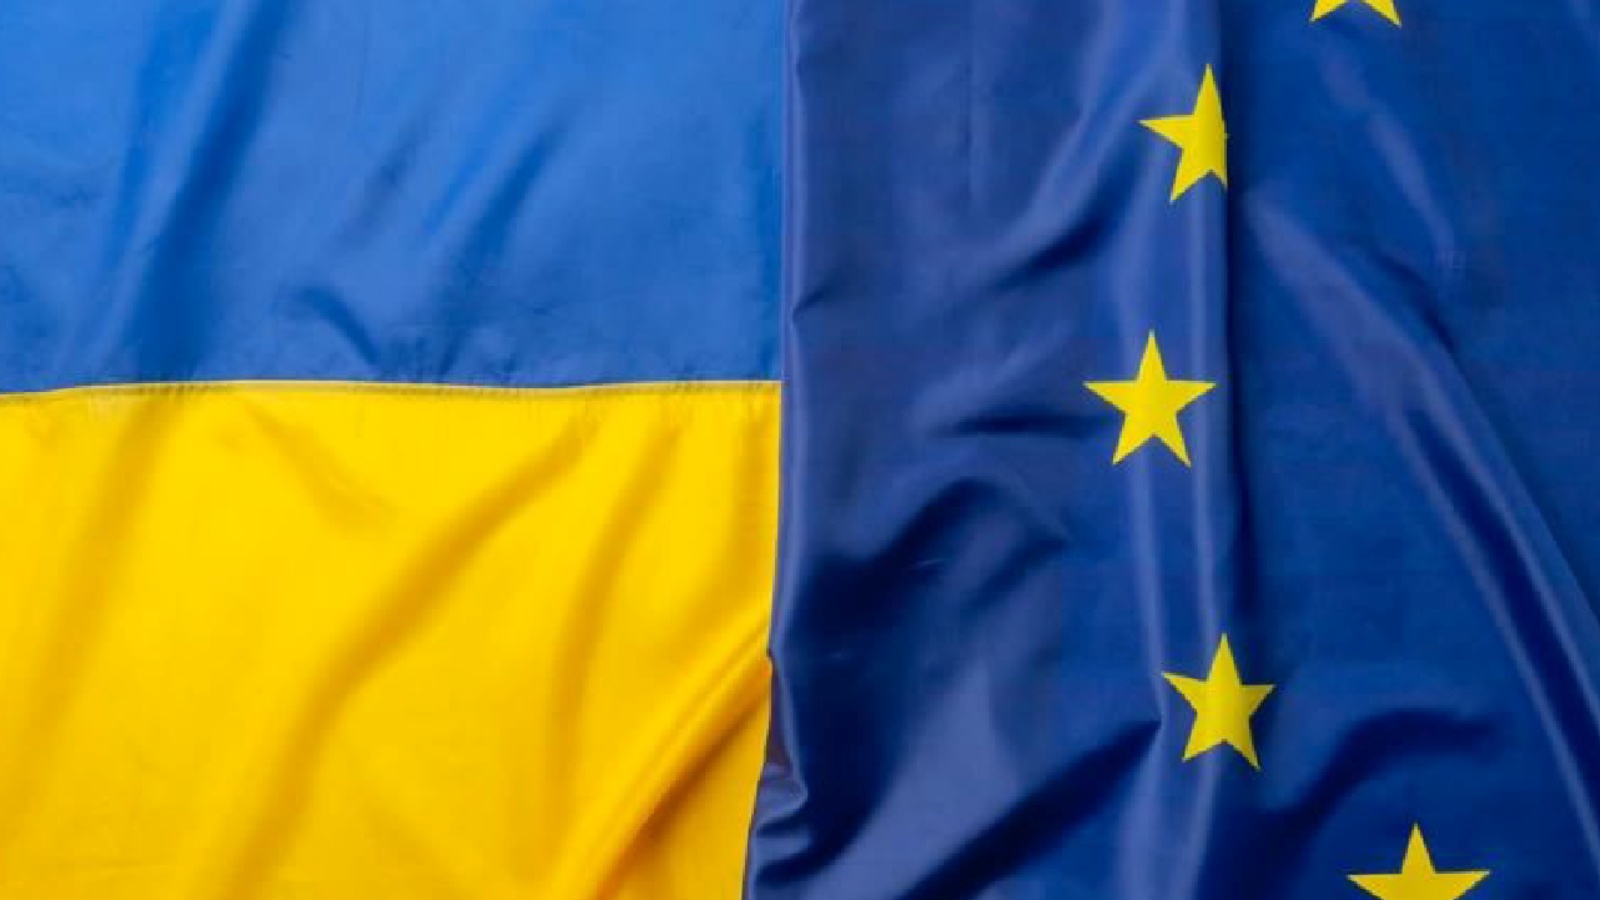 Comisia Europeana Livreaza Ucrainei Echipamente de Protectie pentru Atacuri Chimice, Biologice Raiologice si Nucleare